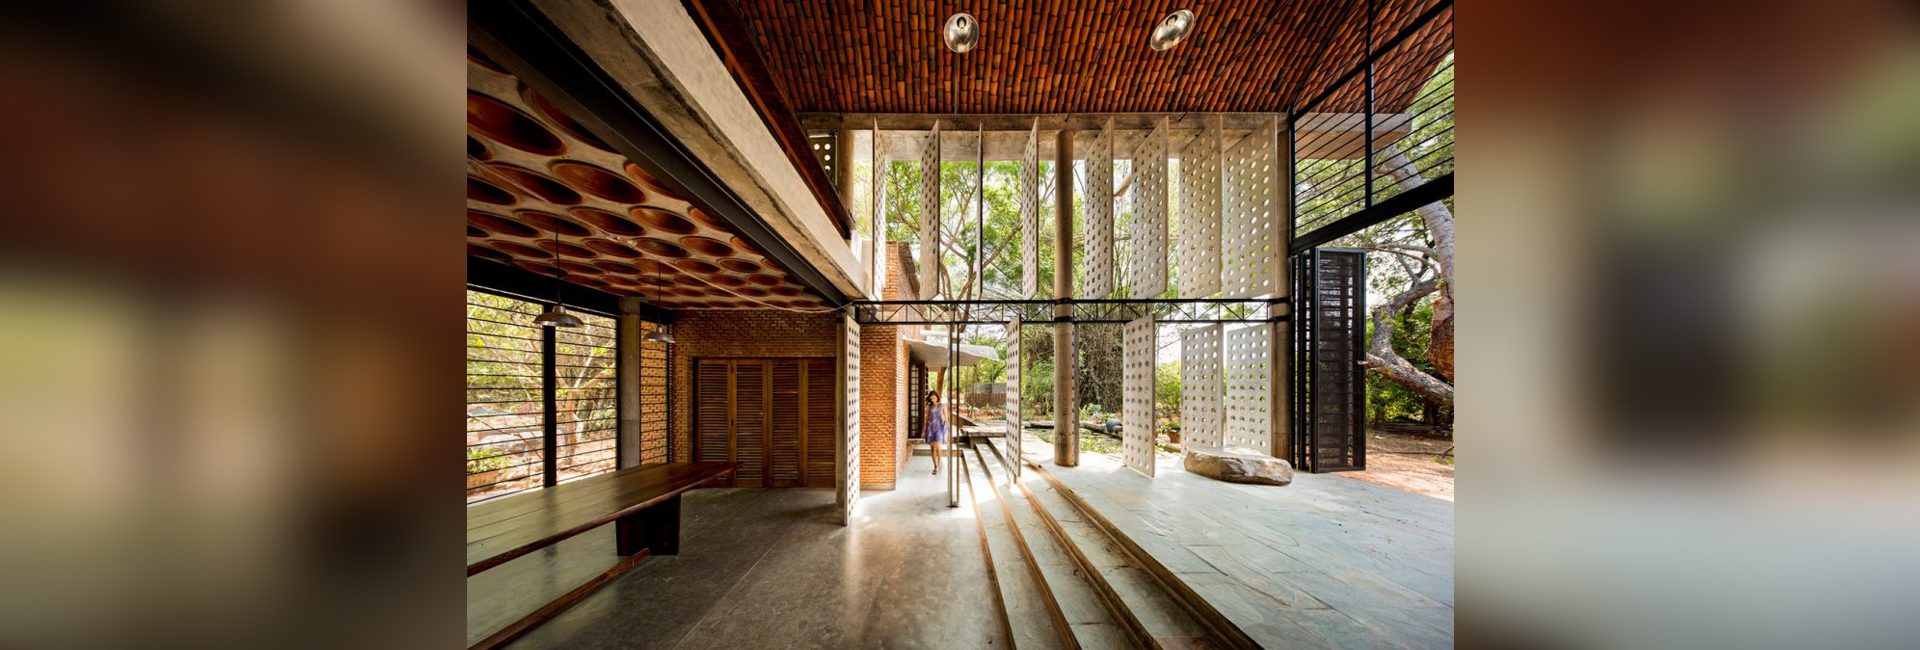 المهندس المعماري أنوباما كوندو: عند تقاطع الحداثة ، الاستدامة